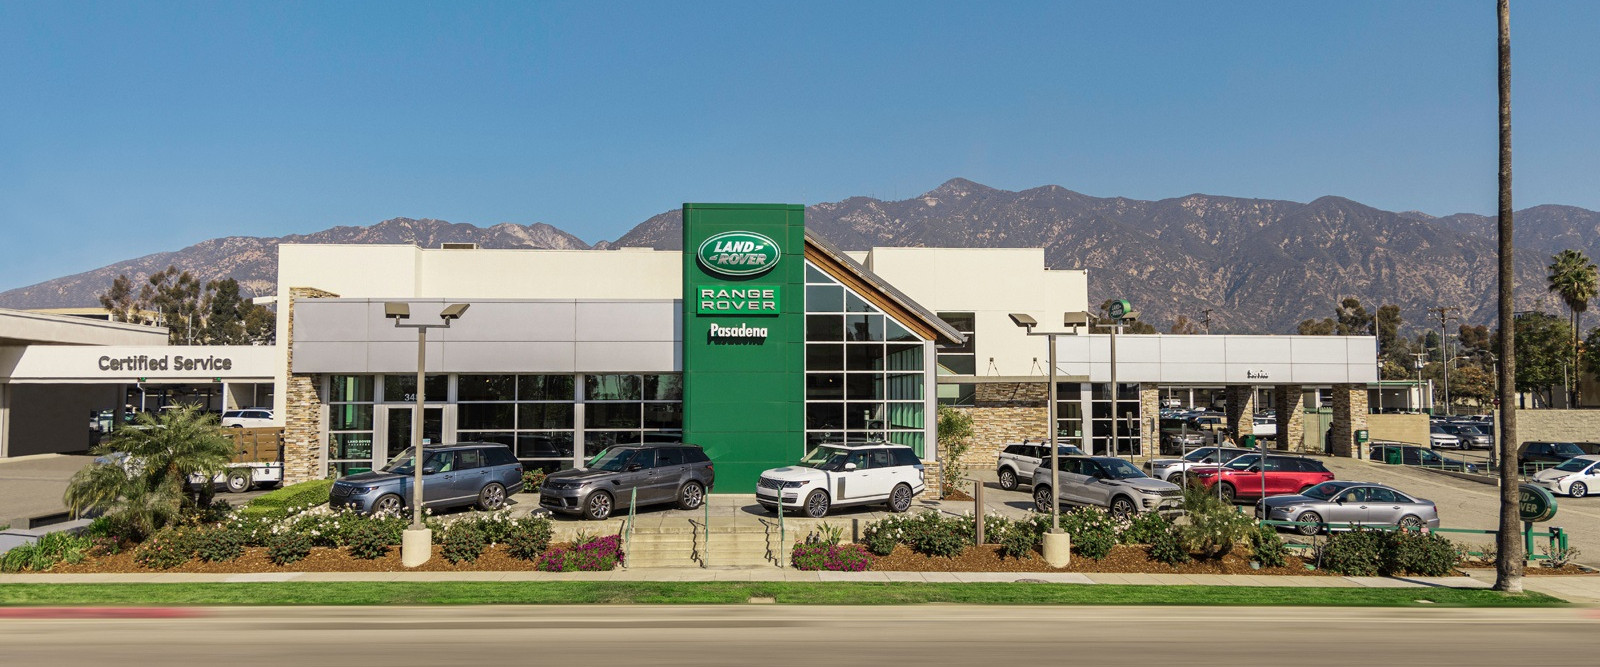 US Property Trust - Land Rover Pasadena